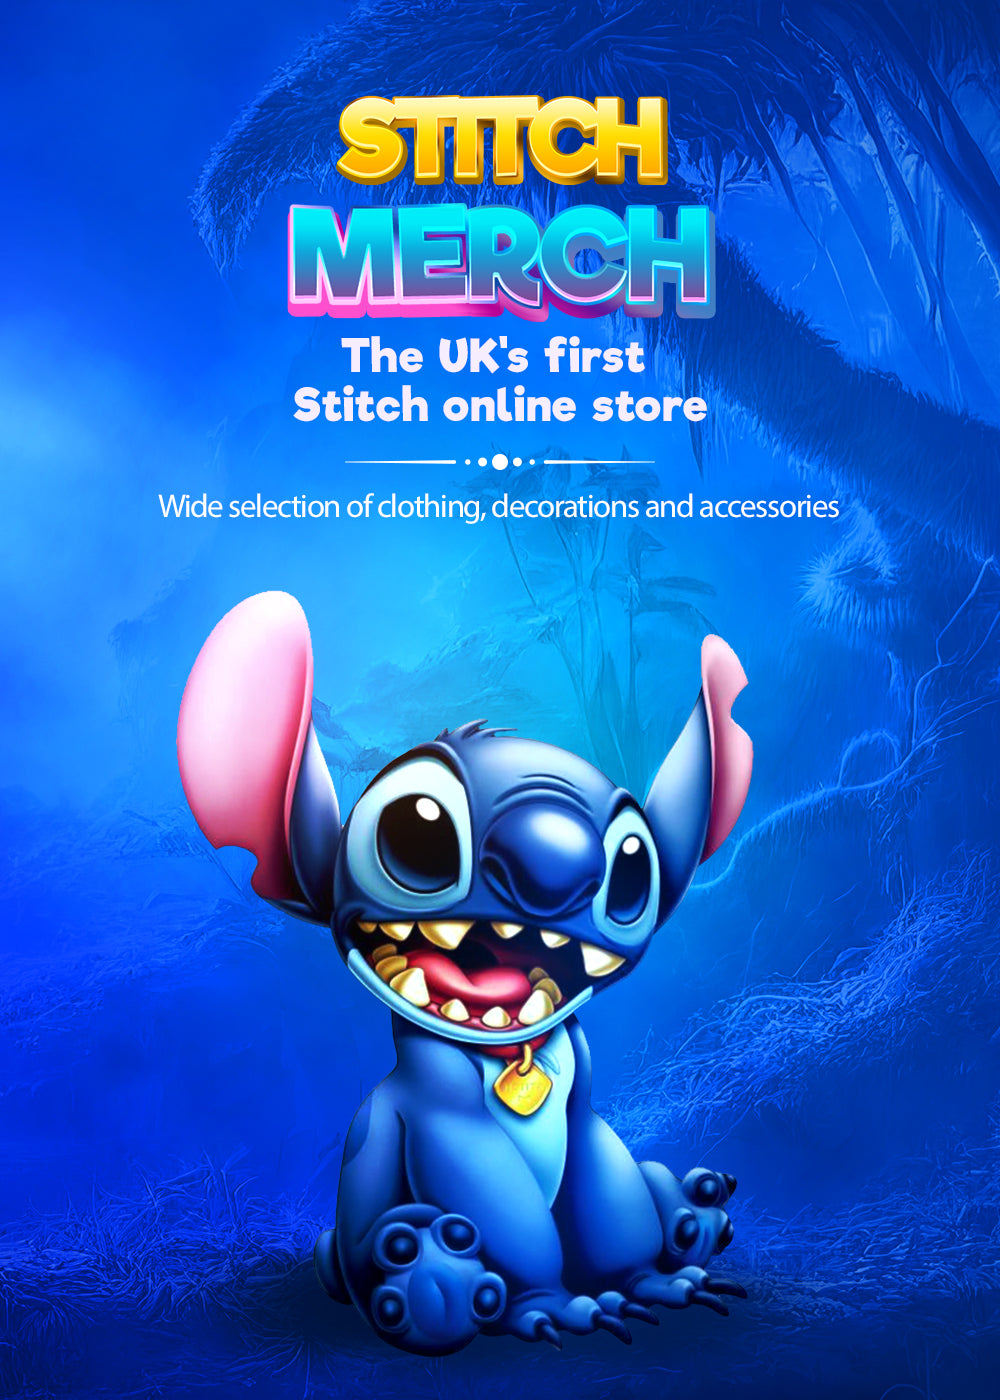 Stitch Merch : The #1 Stitch Shop in the UK